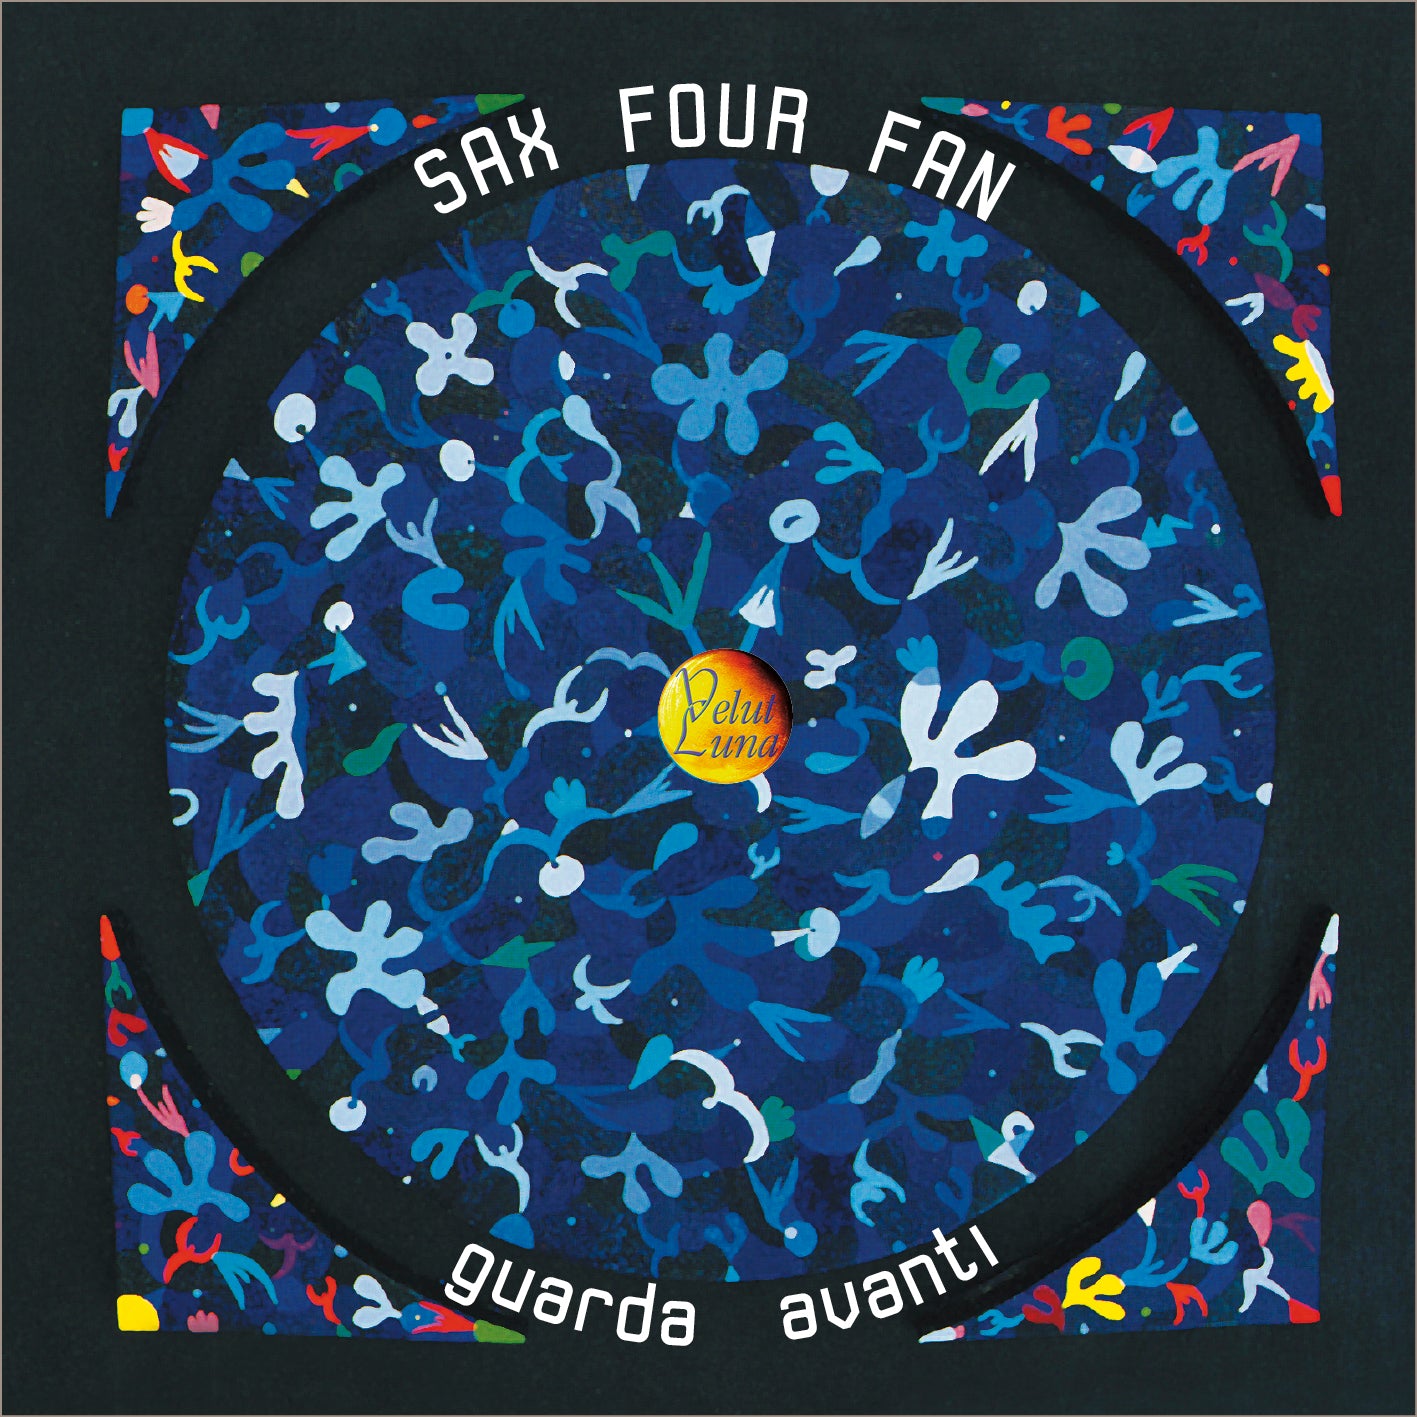 GUARDA AVANTI - Sax Four Fun